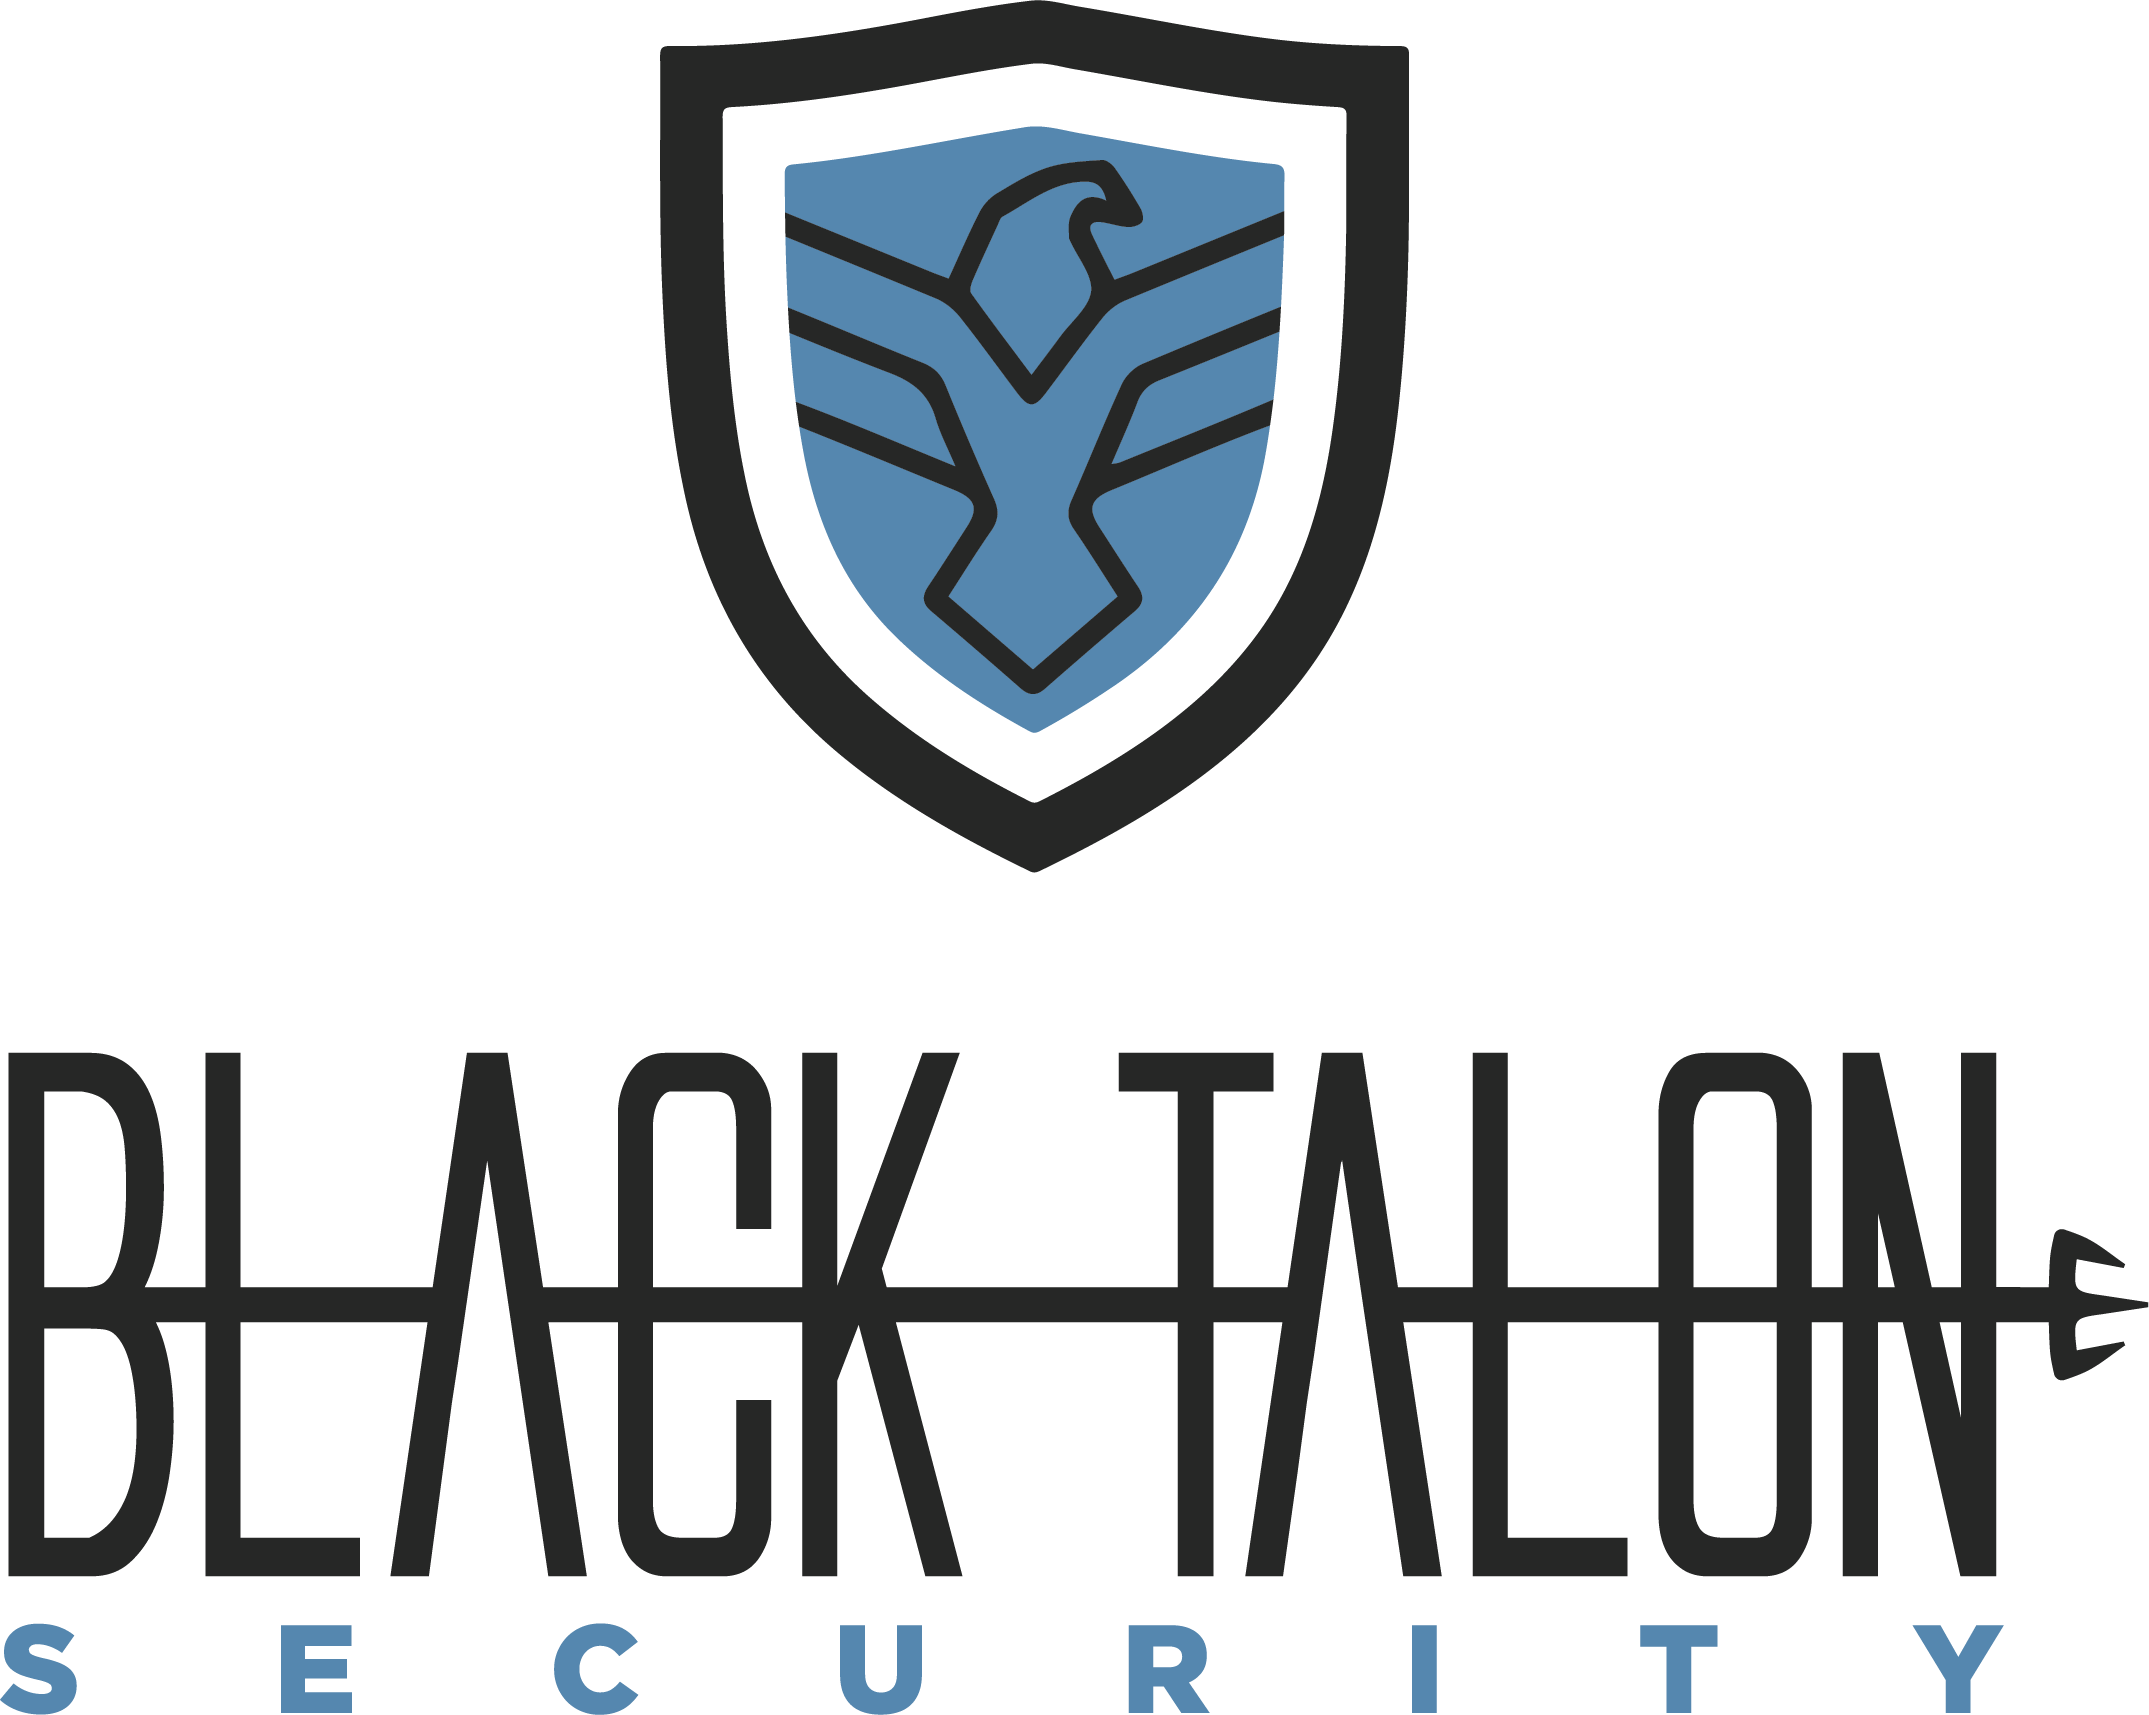 Black Talon Security